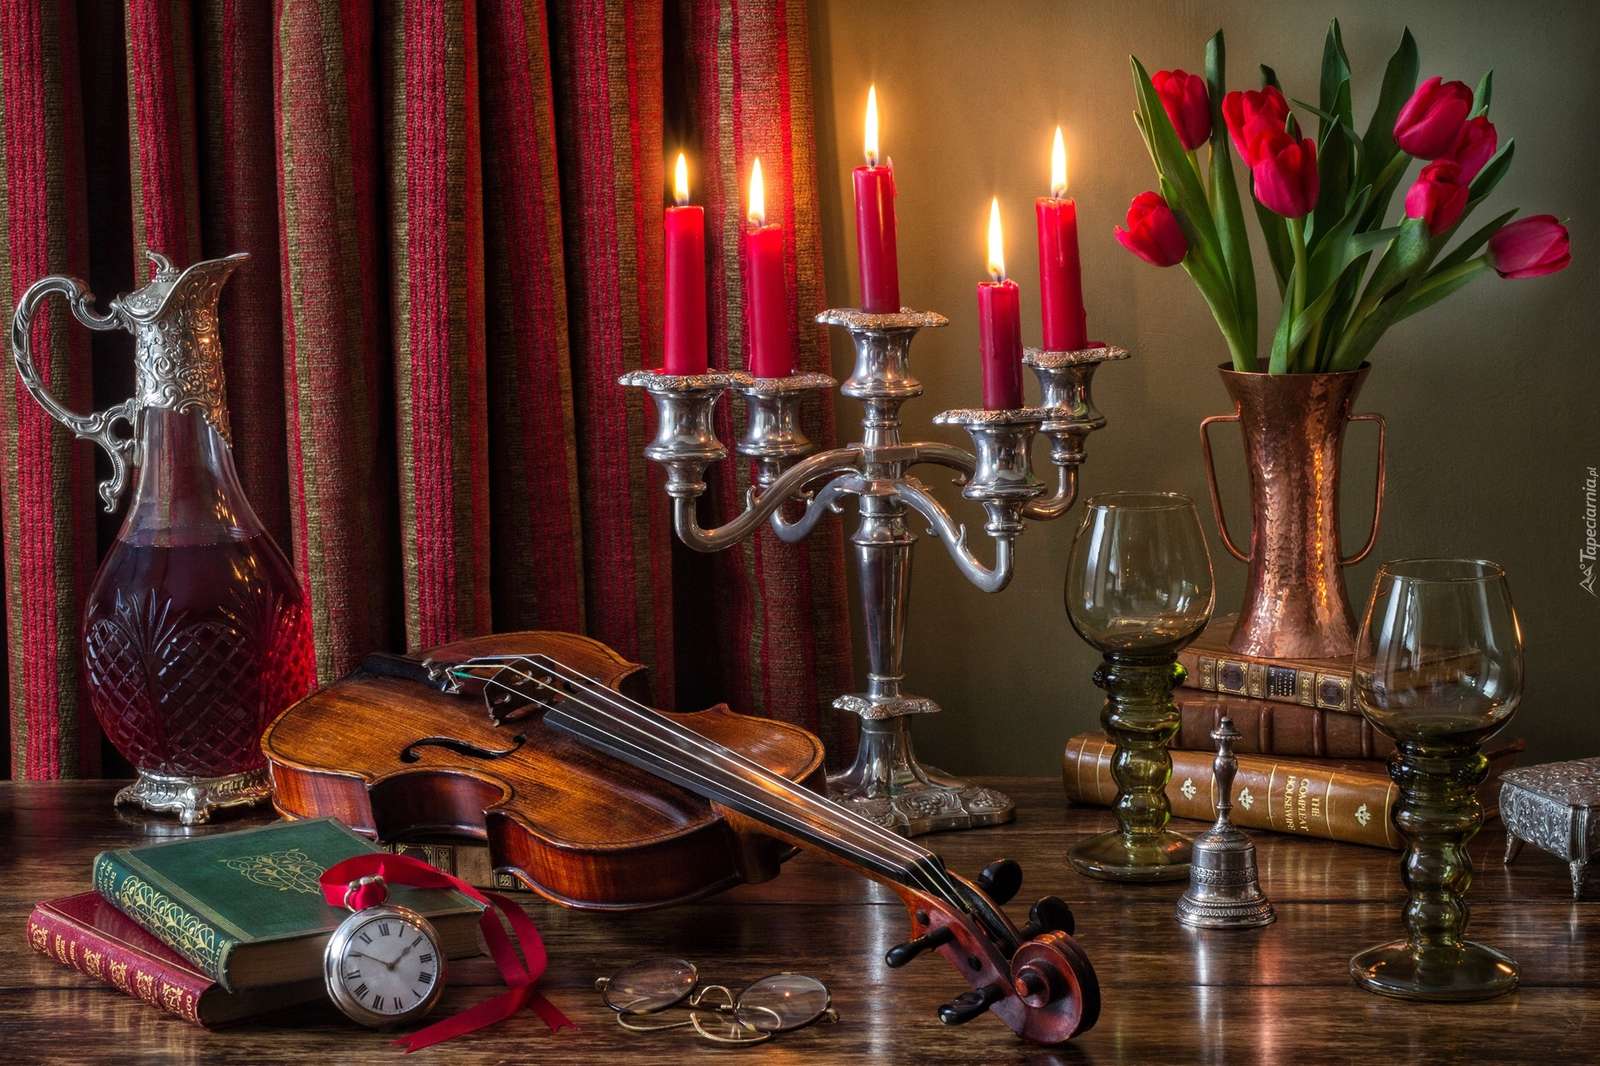 housle vedle svícnu s červenými svíčkami online puzzle